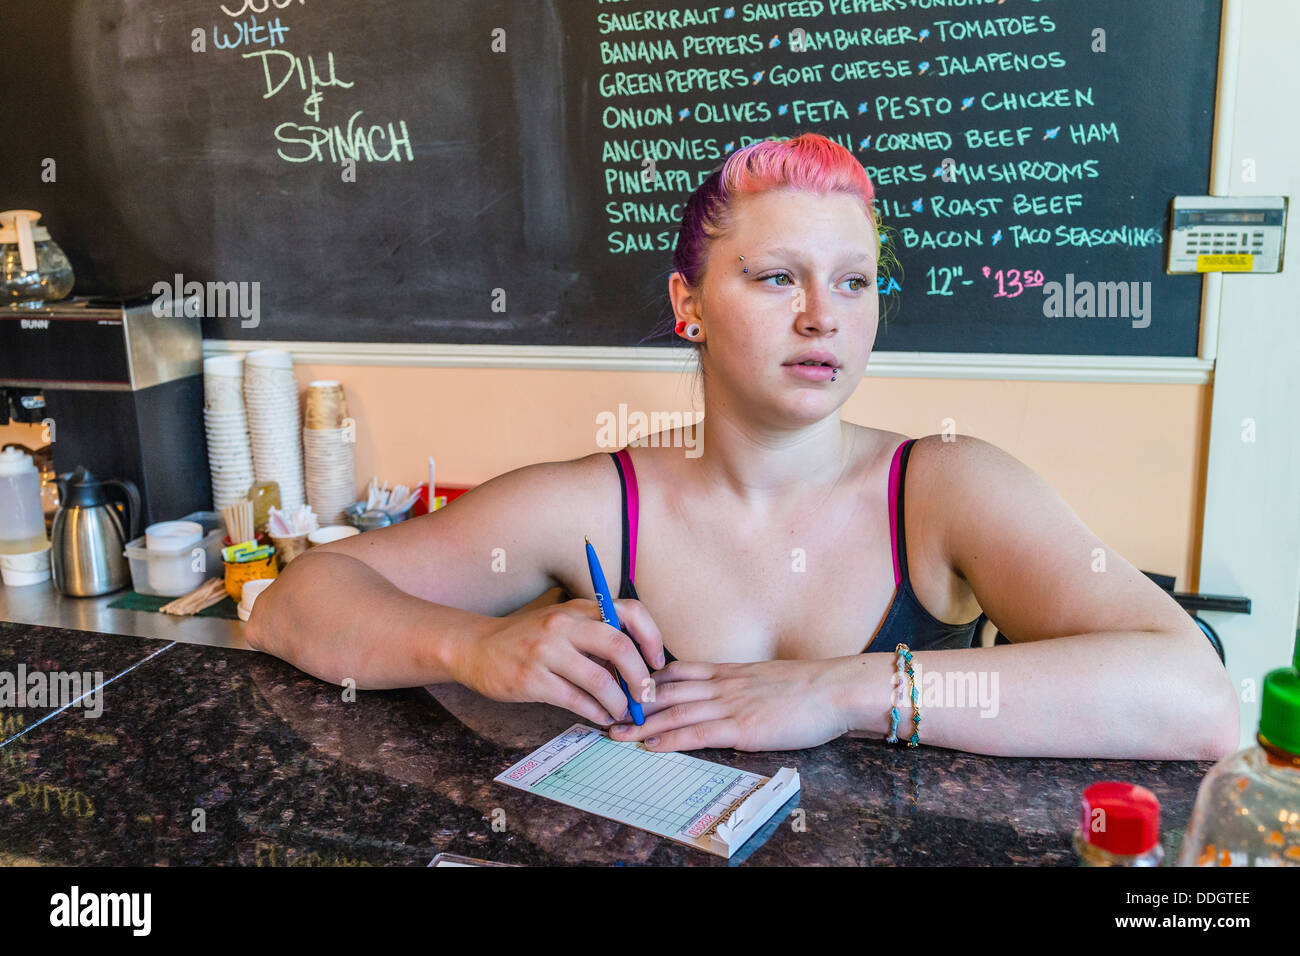 Hipster chica en sus veinte años, que trabaja en la tienda de helados y tiene piercings y multi-color del cabello. Foto de stock